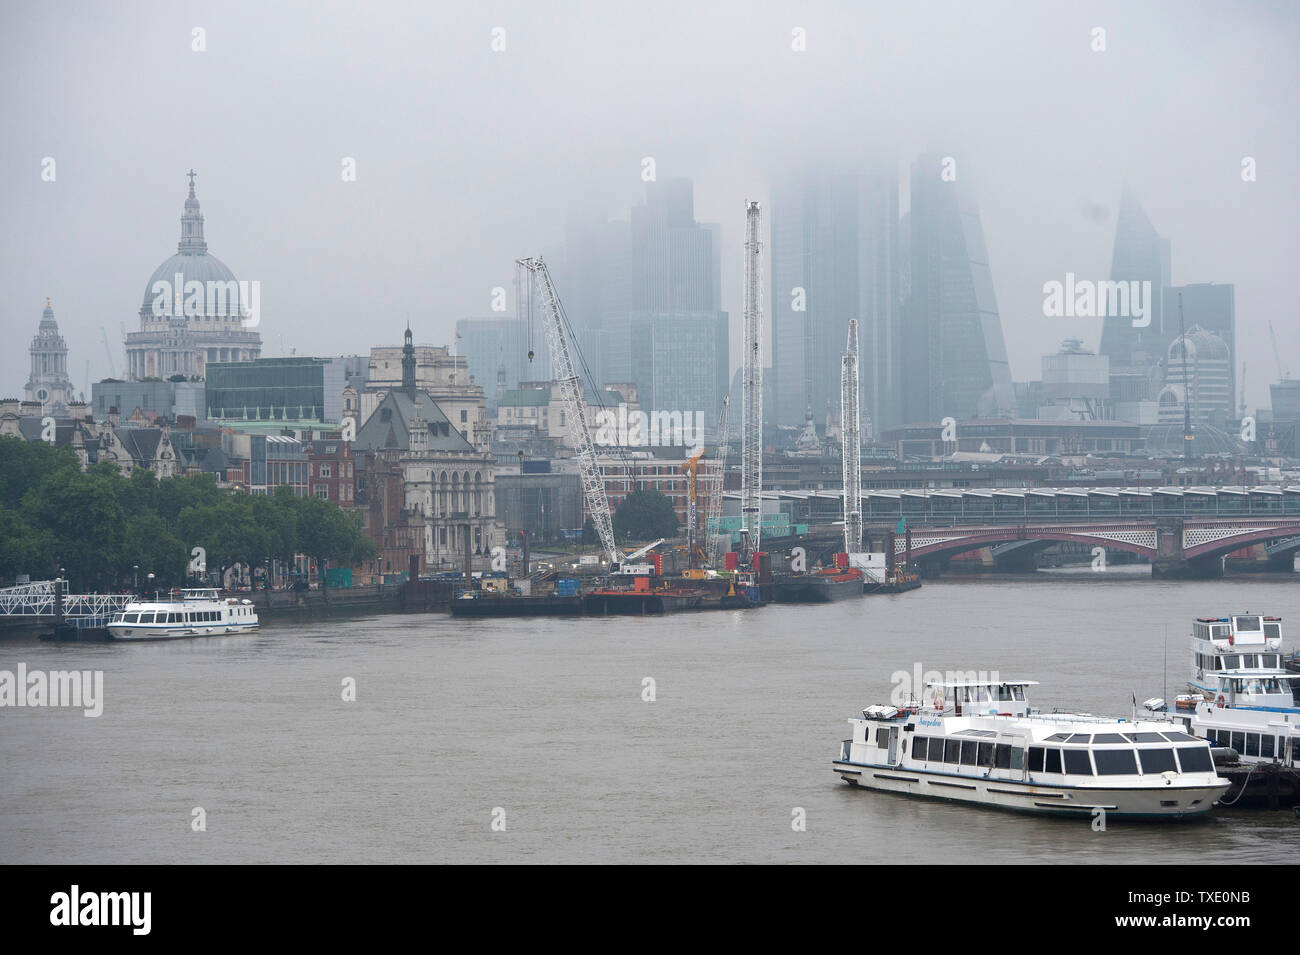 Grauer Himmel über die Skyline von London. Gewitter durch eine Feder des warmen kontinentalen Luft angetrieben haben begonnen zu entladen' kräftige Regengüsse und Blitze über South East England. Stockfoto